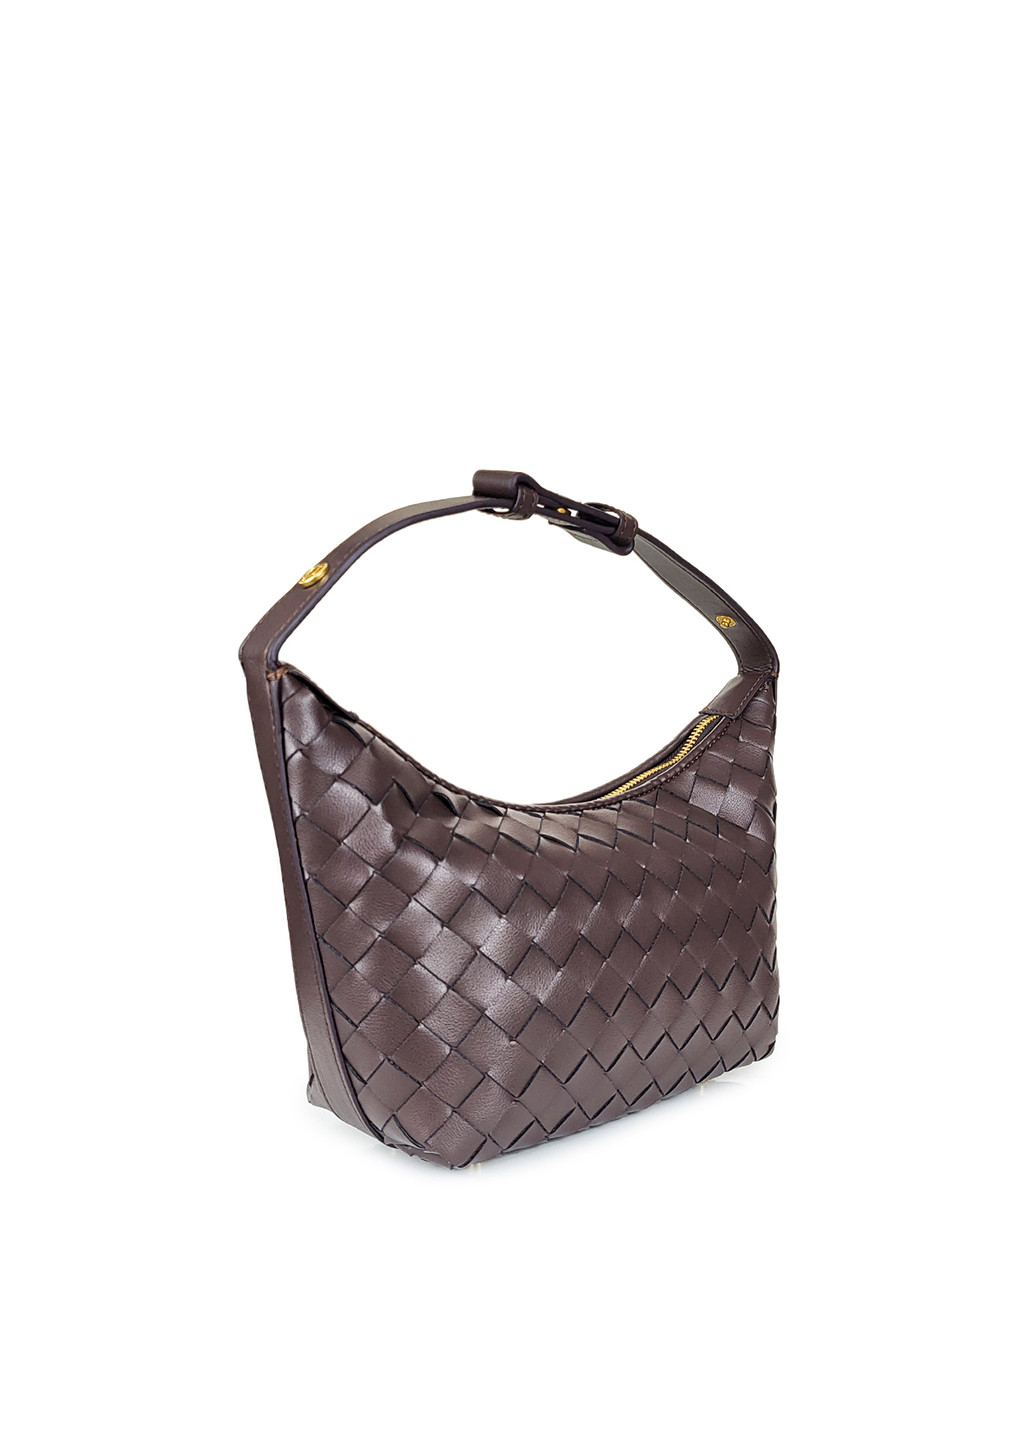 Кожаная сумка хобо коричневая плетенная, 9752 кор, Fashion (267404189)